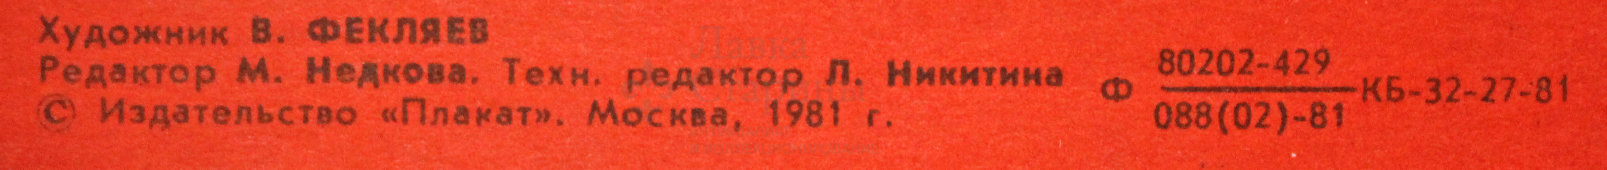 Советский агитационный плакат «Сами проектируем, сами строим!», художник В. Фекляев, 1981 г.